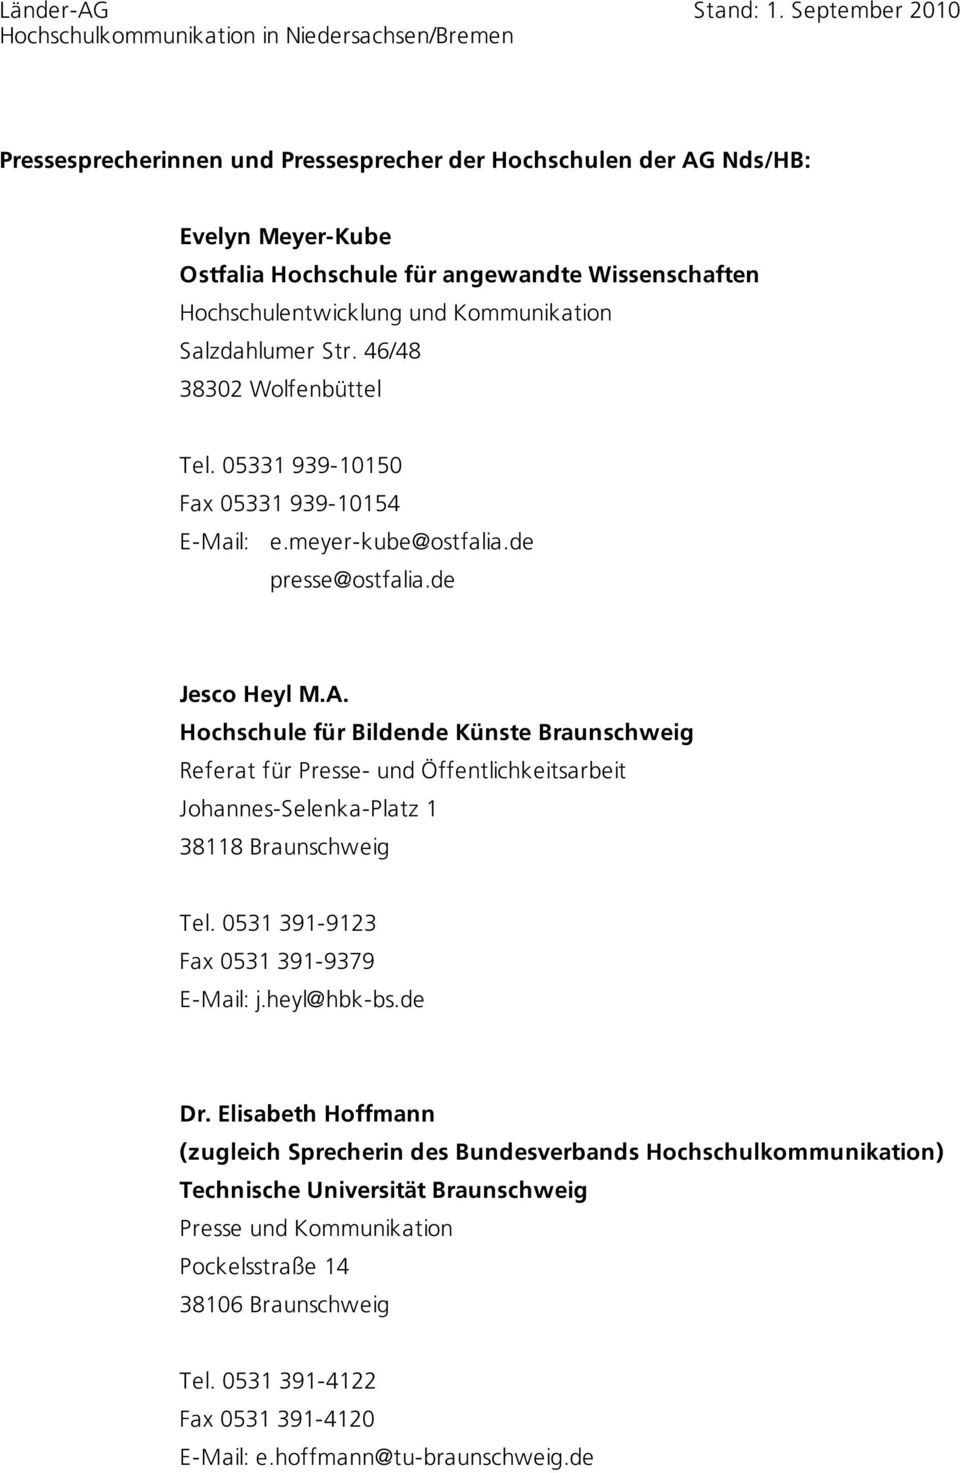 Hochschule für Bildende Künste Braunschweig Referat für Johannes-Selenka-Platz 1 38118 Braunschweig Tel. 0531 391-9123 Fax 0531 391-9379 E-Mail: j.heyl@hbk-bs.de Dr.